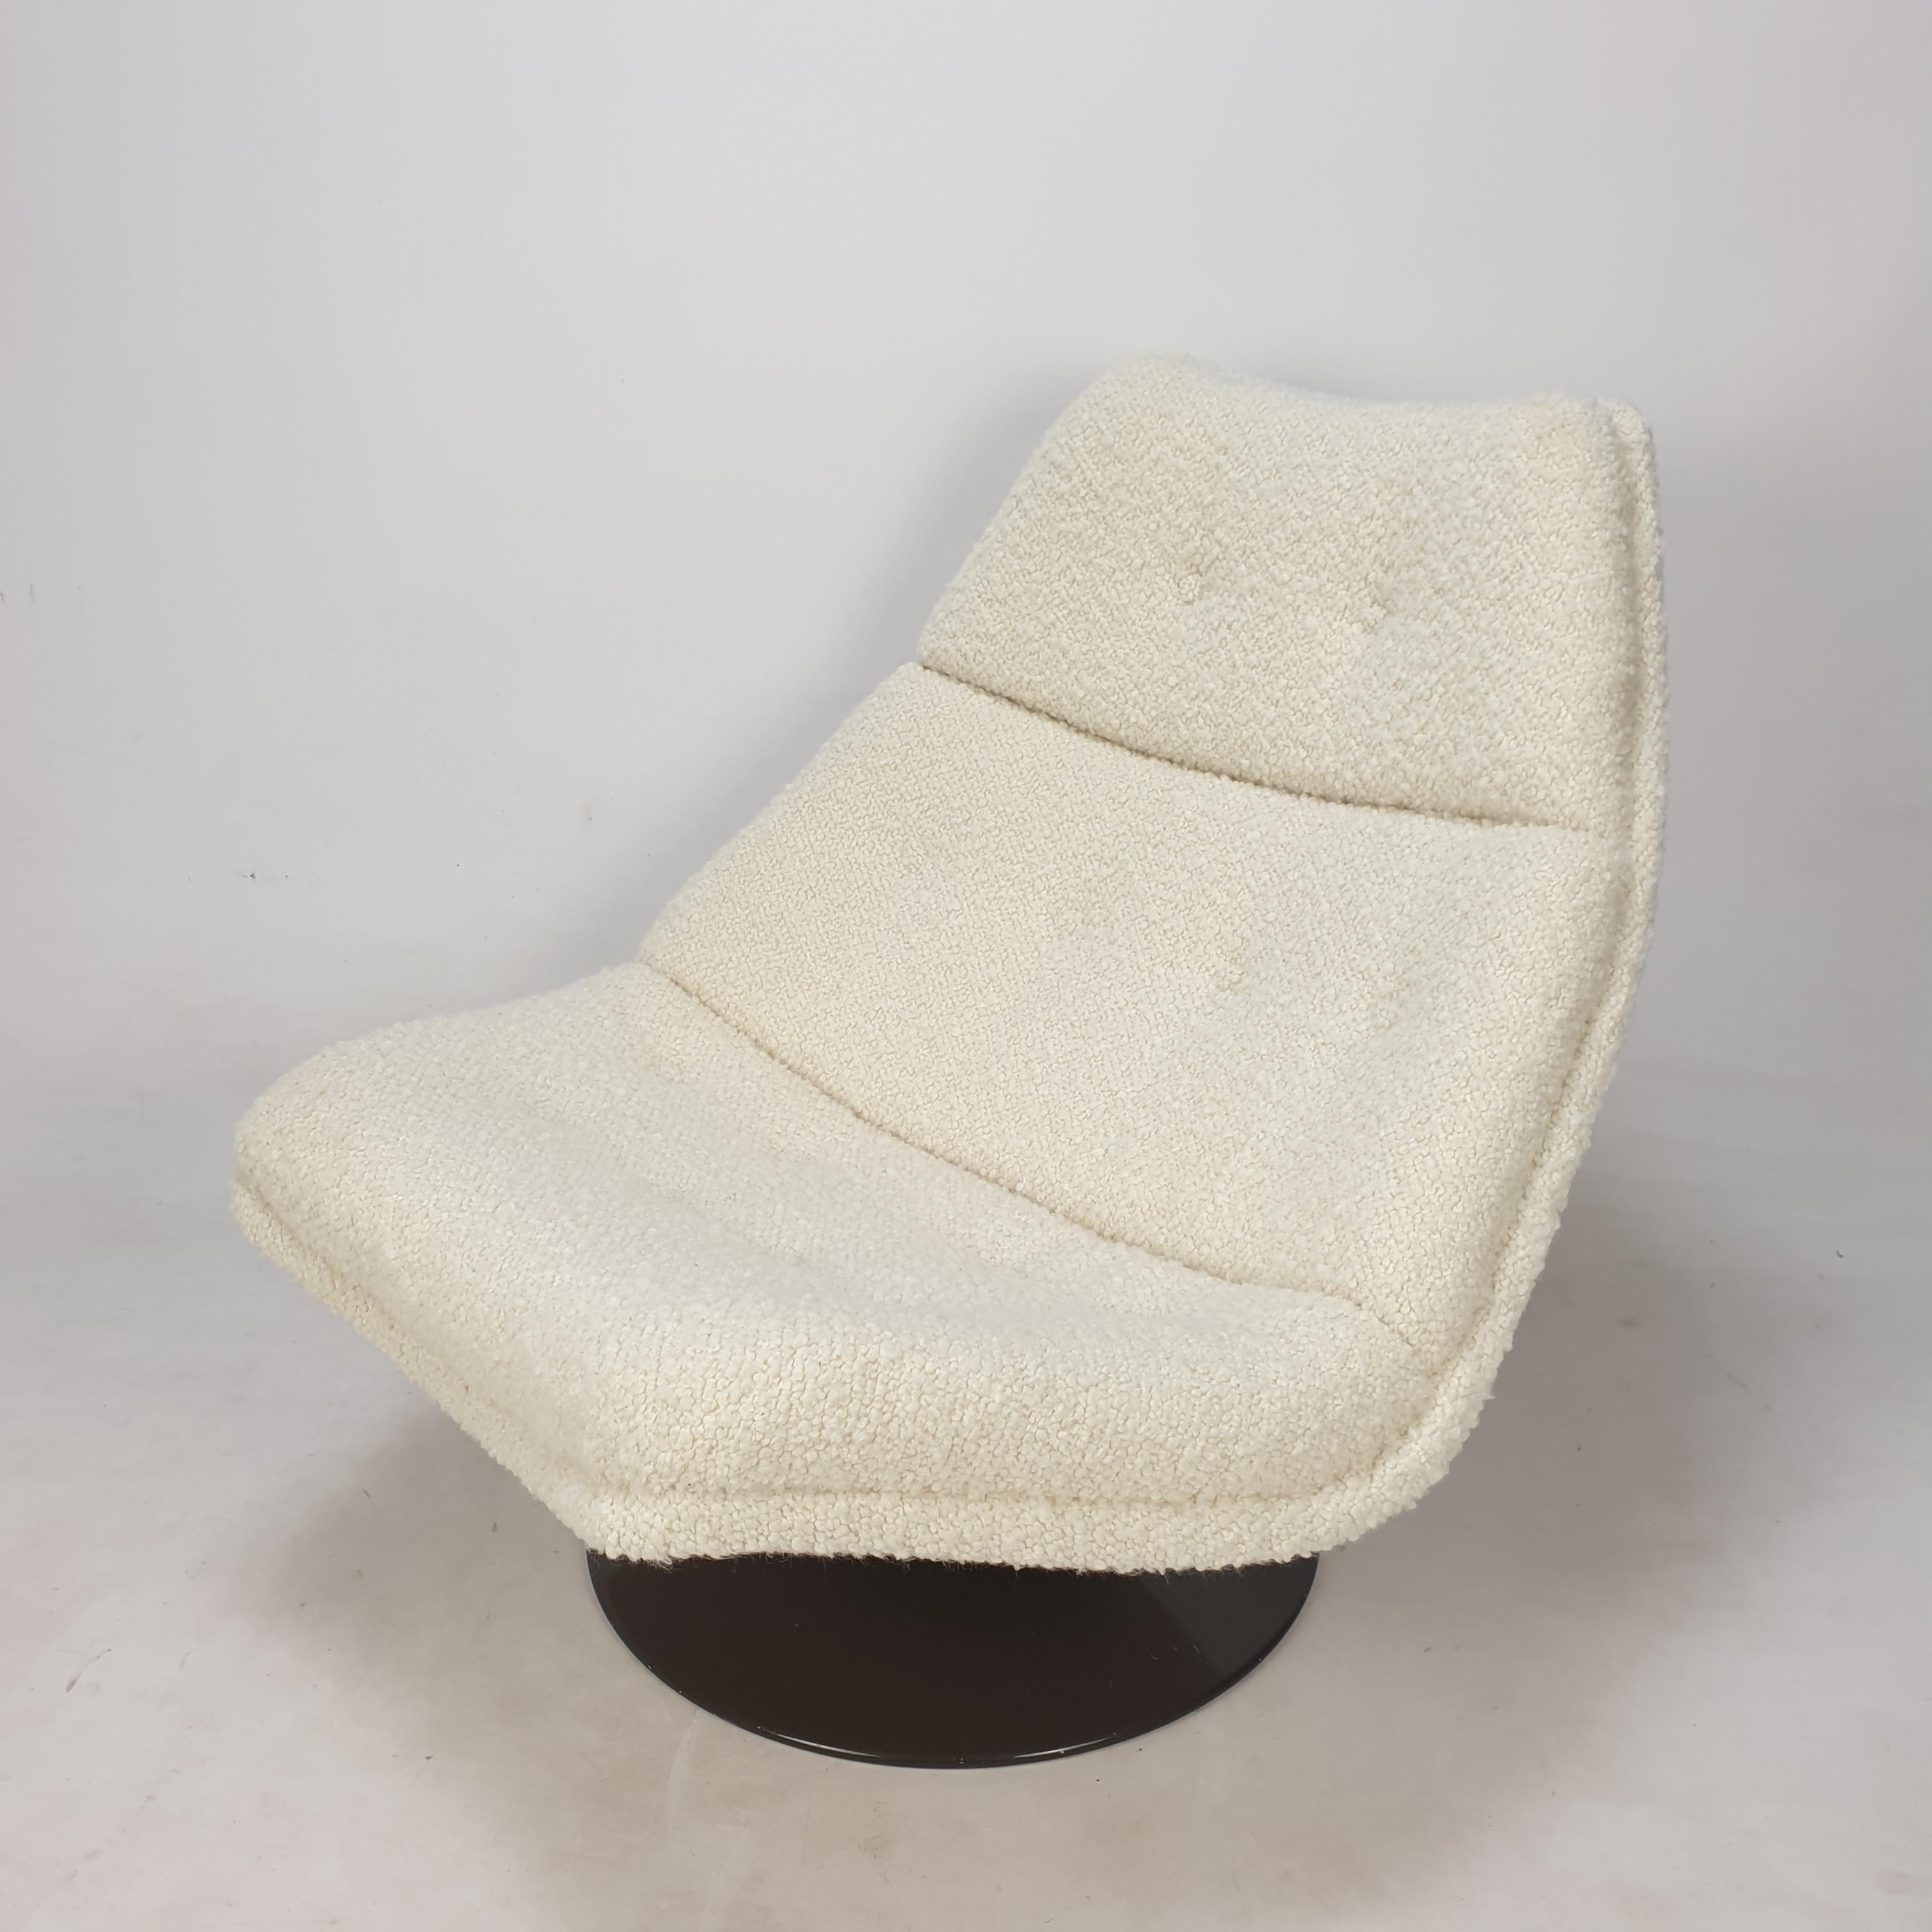 Chaise longue Artifort très confortable, modèle F511.
Conçu par le célèbre designer anglais Geoffrey Harcourt dans les années 60. 

La chaise vient d'être restaurée avec un nouveau tissu et une nouvelle mousse.
Il a été retapissé avec un tissu